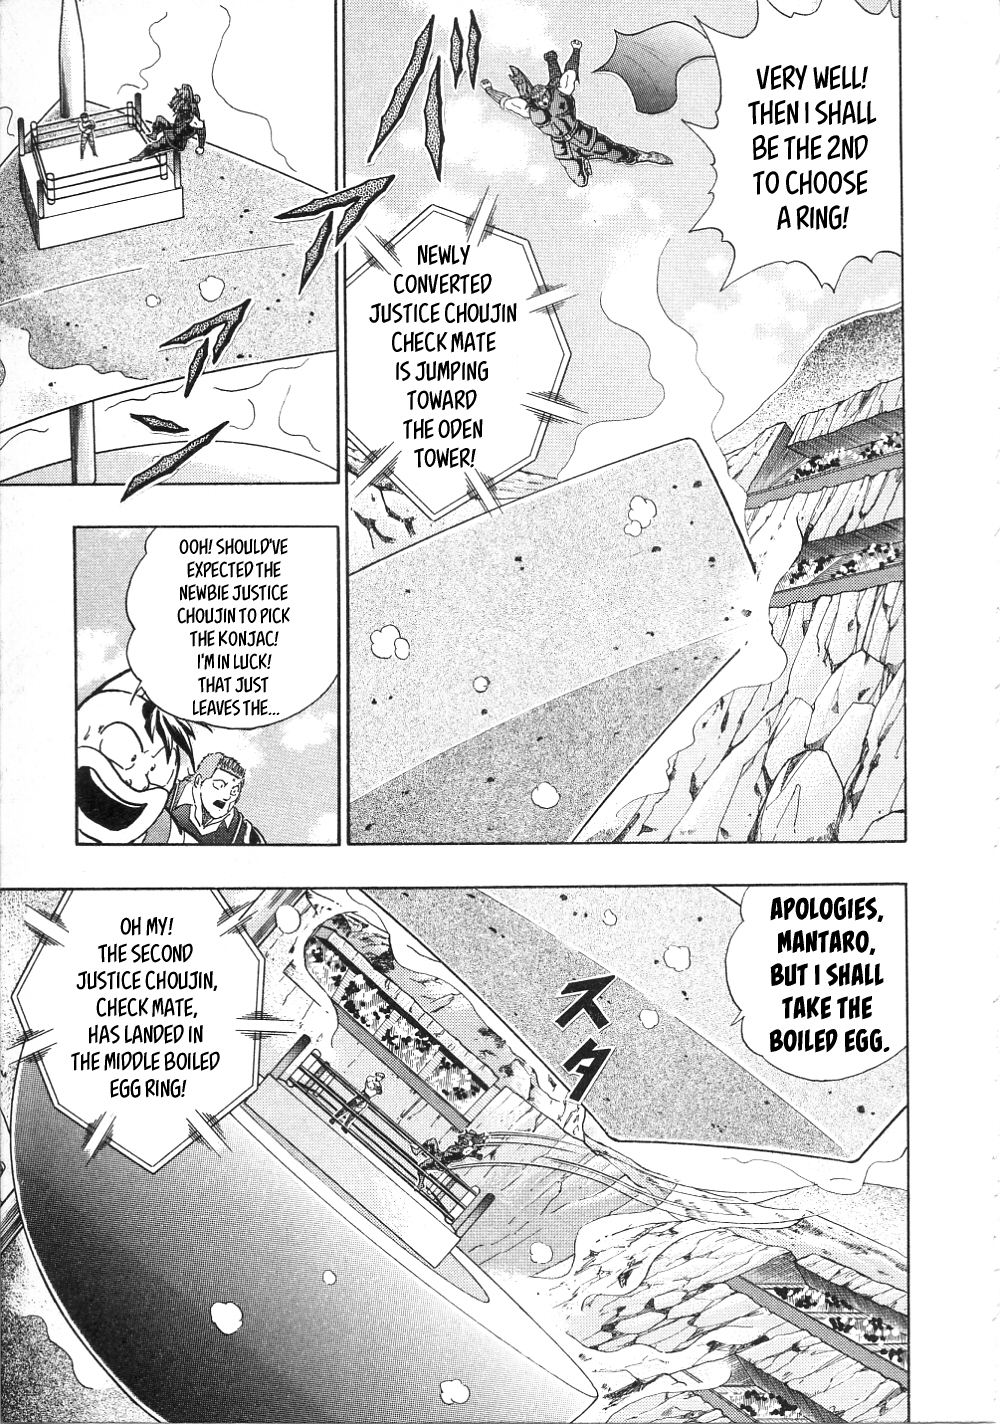 Kinnikuman Nisei ~All Out Chojin Assault~ Vol. 1 Ch. 14 Frightening Messenger From Satan? The Second Term Army Corps!